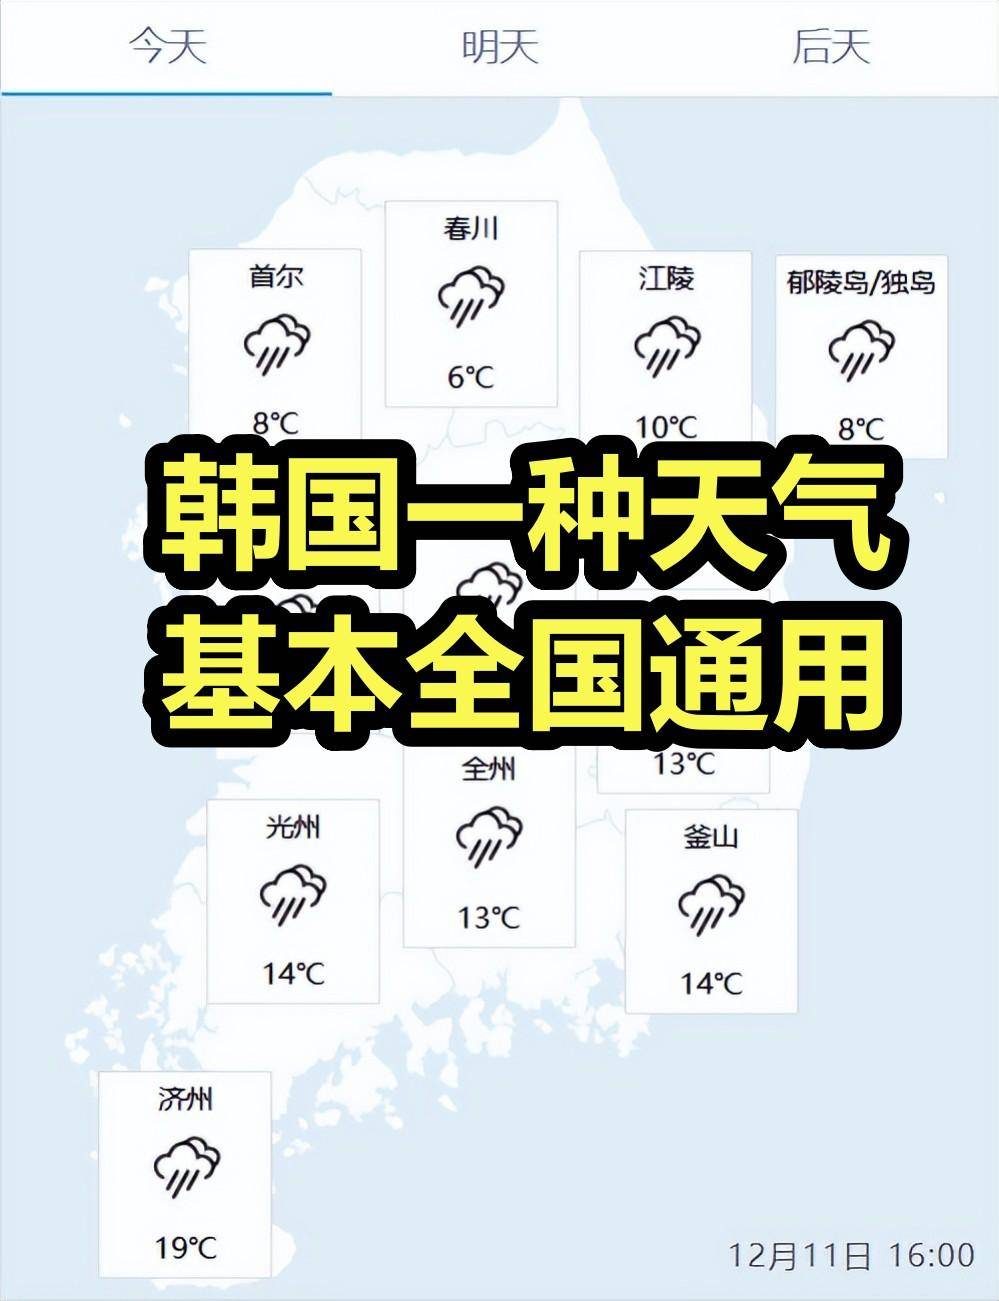 中国南北温差图却让韩国火了:一种天气 全国通用